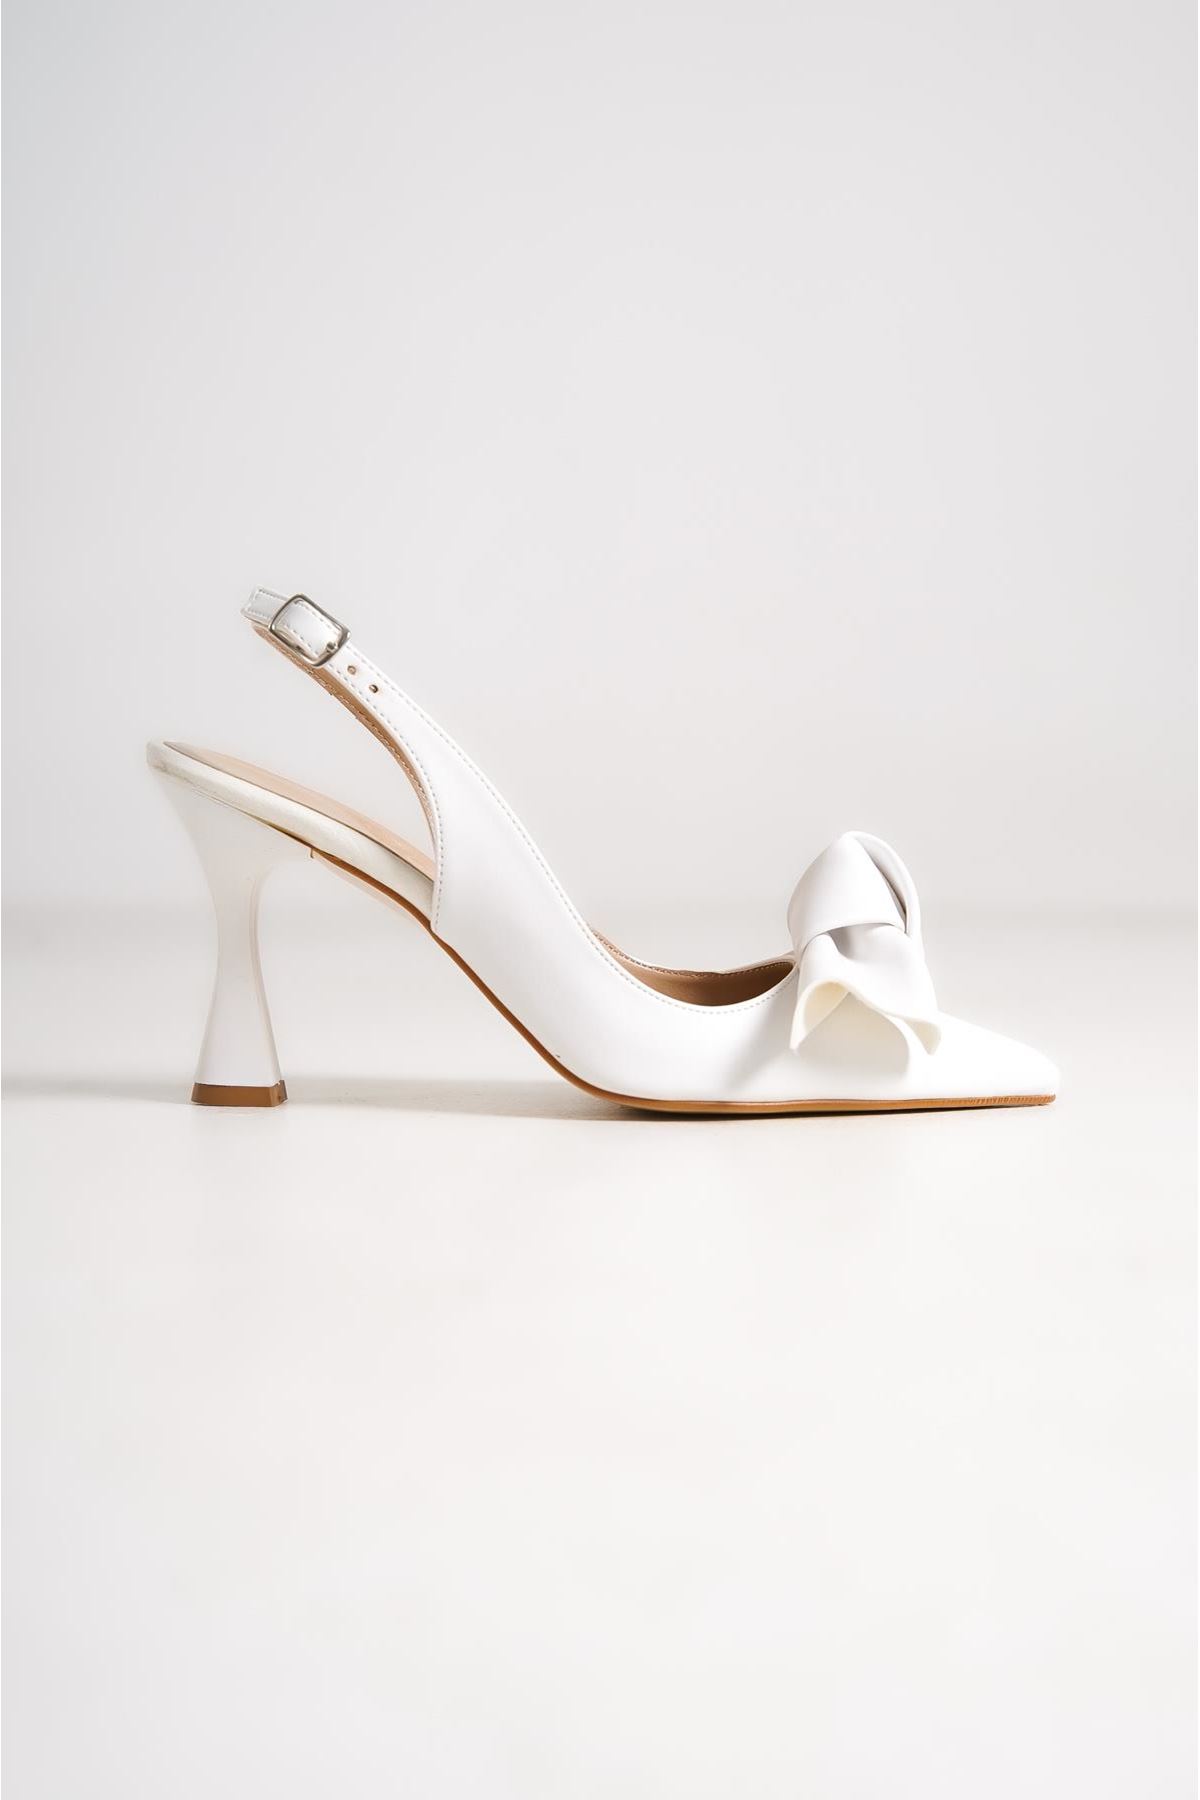 Chiara Kadın Topuklu Ayakkabı Beyaz Fiyonk